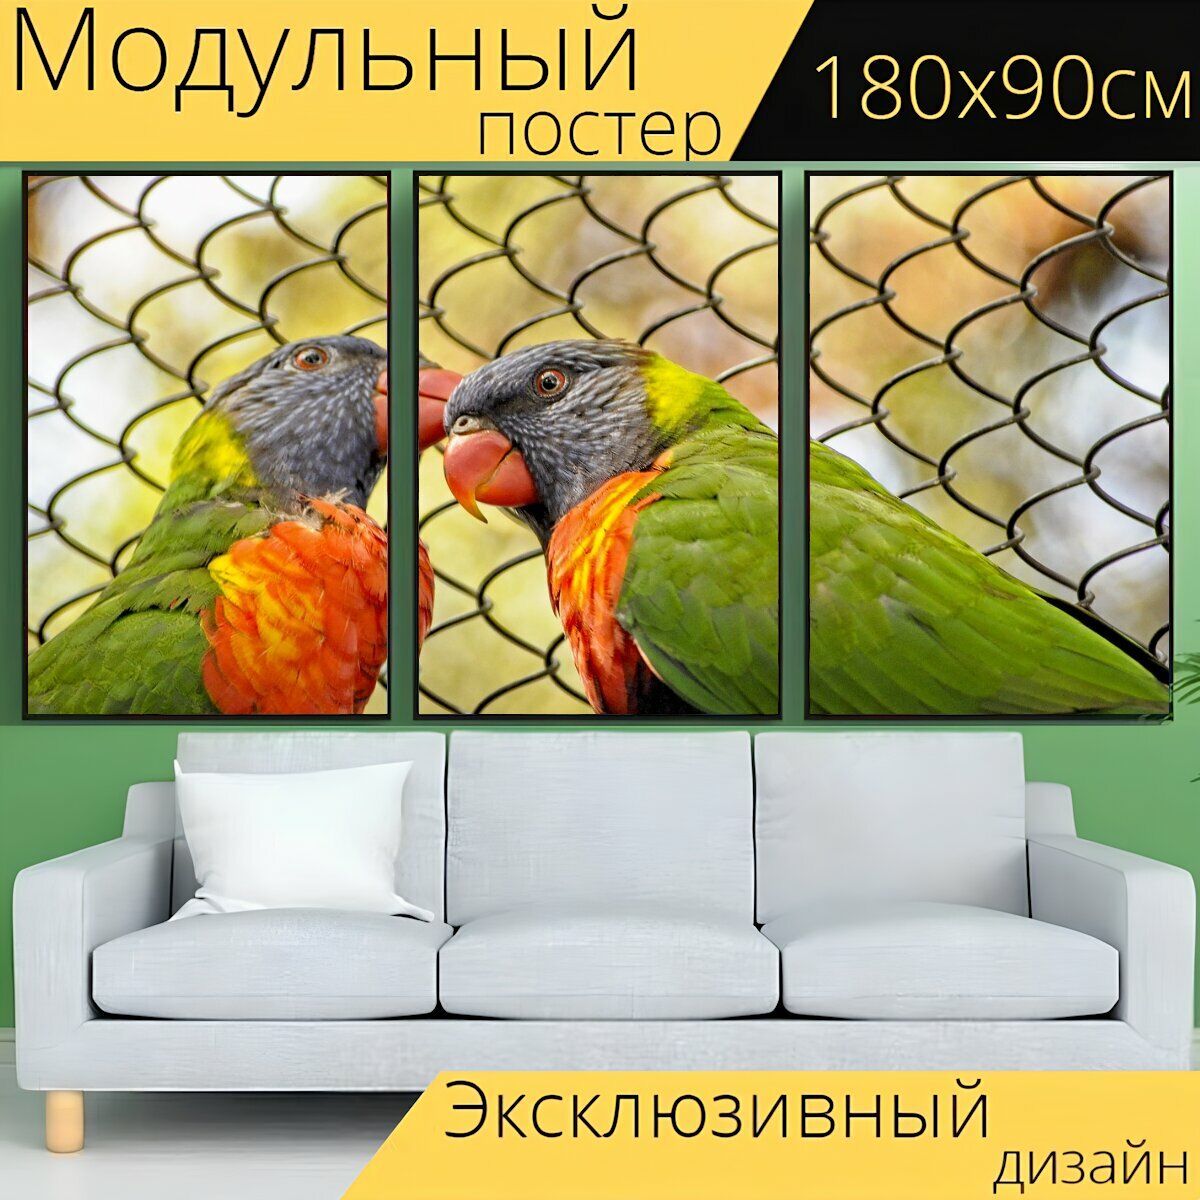 Модульный постер "Мускусный лорикет птицы красочный" 180 x 90 см. для интерьера